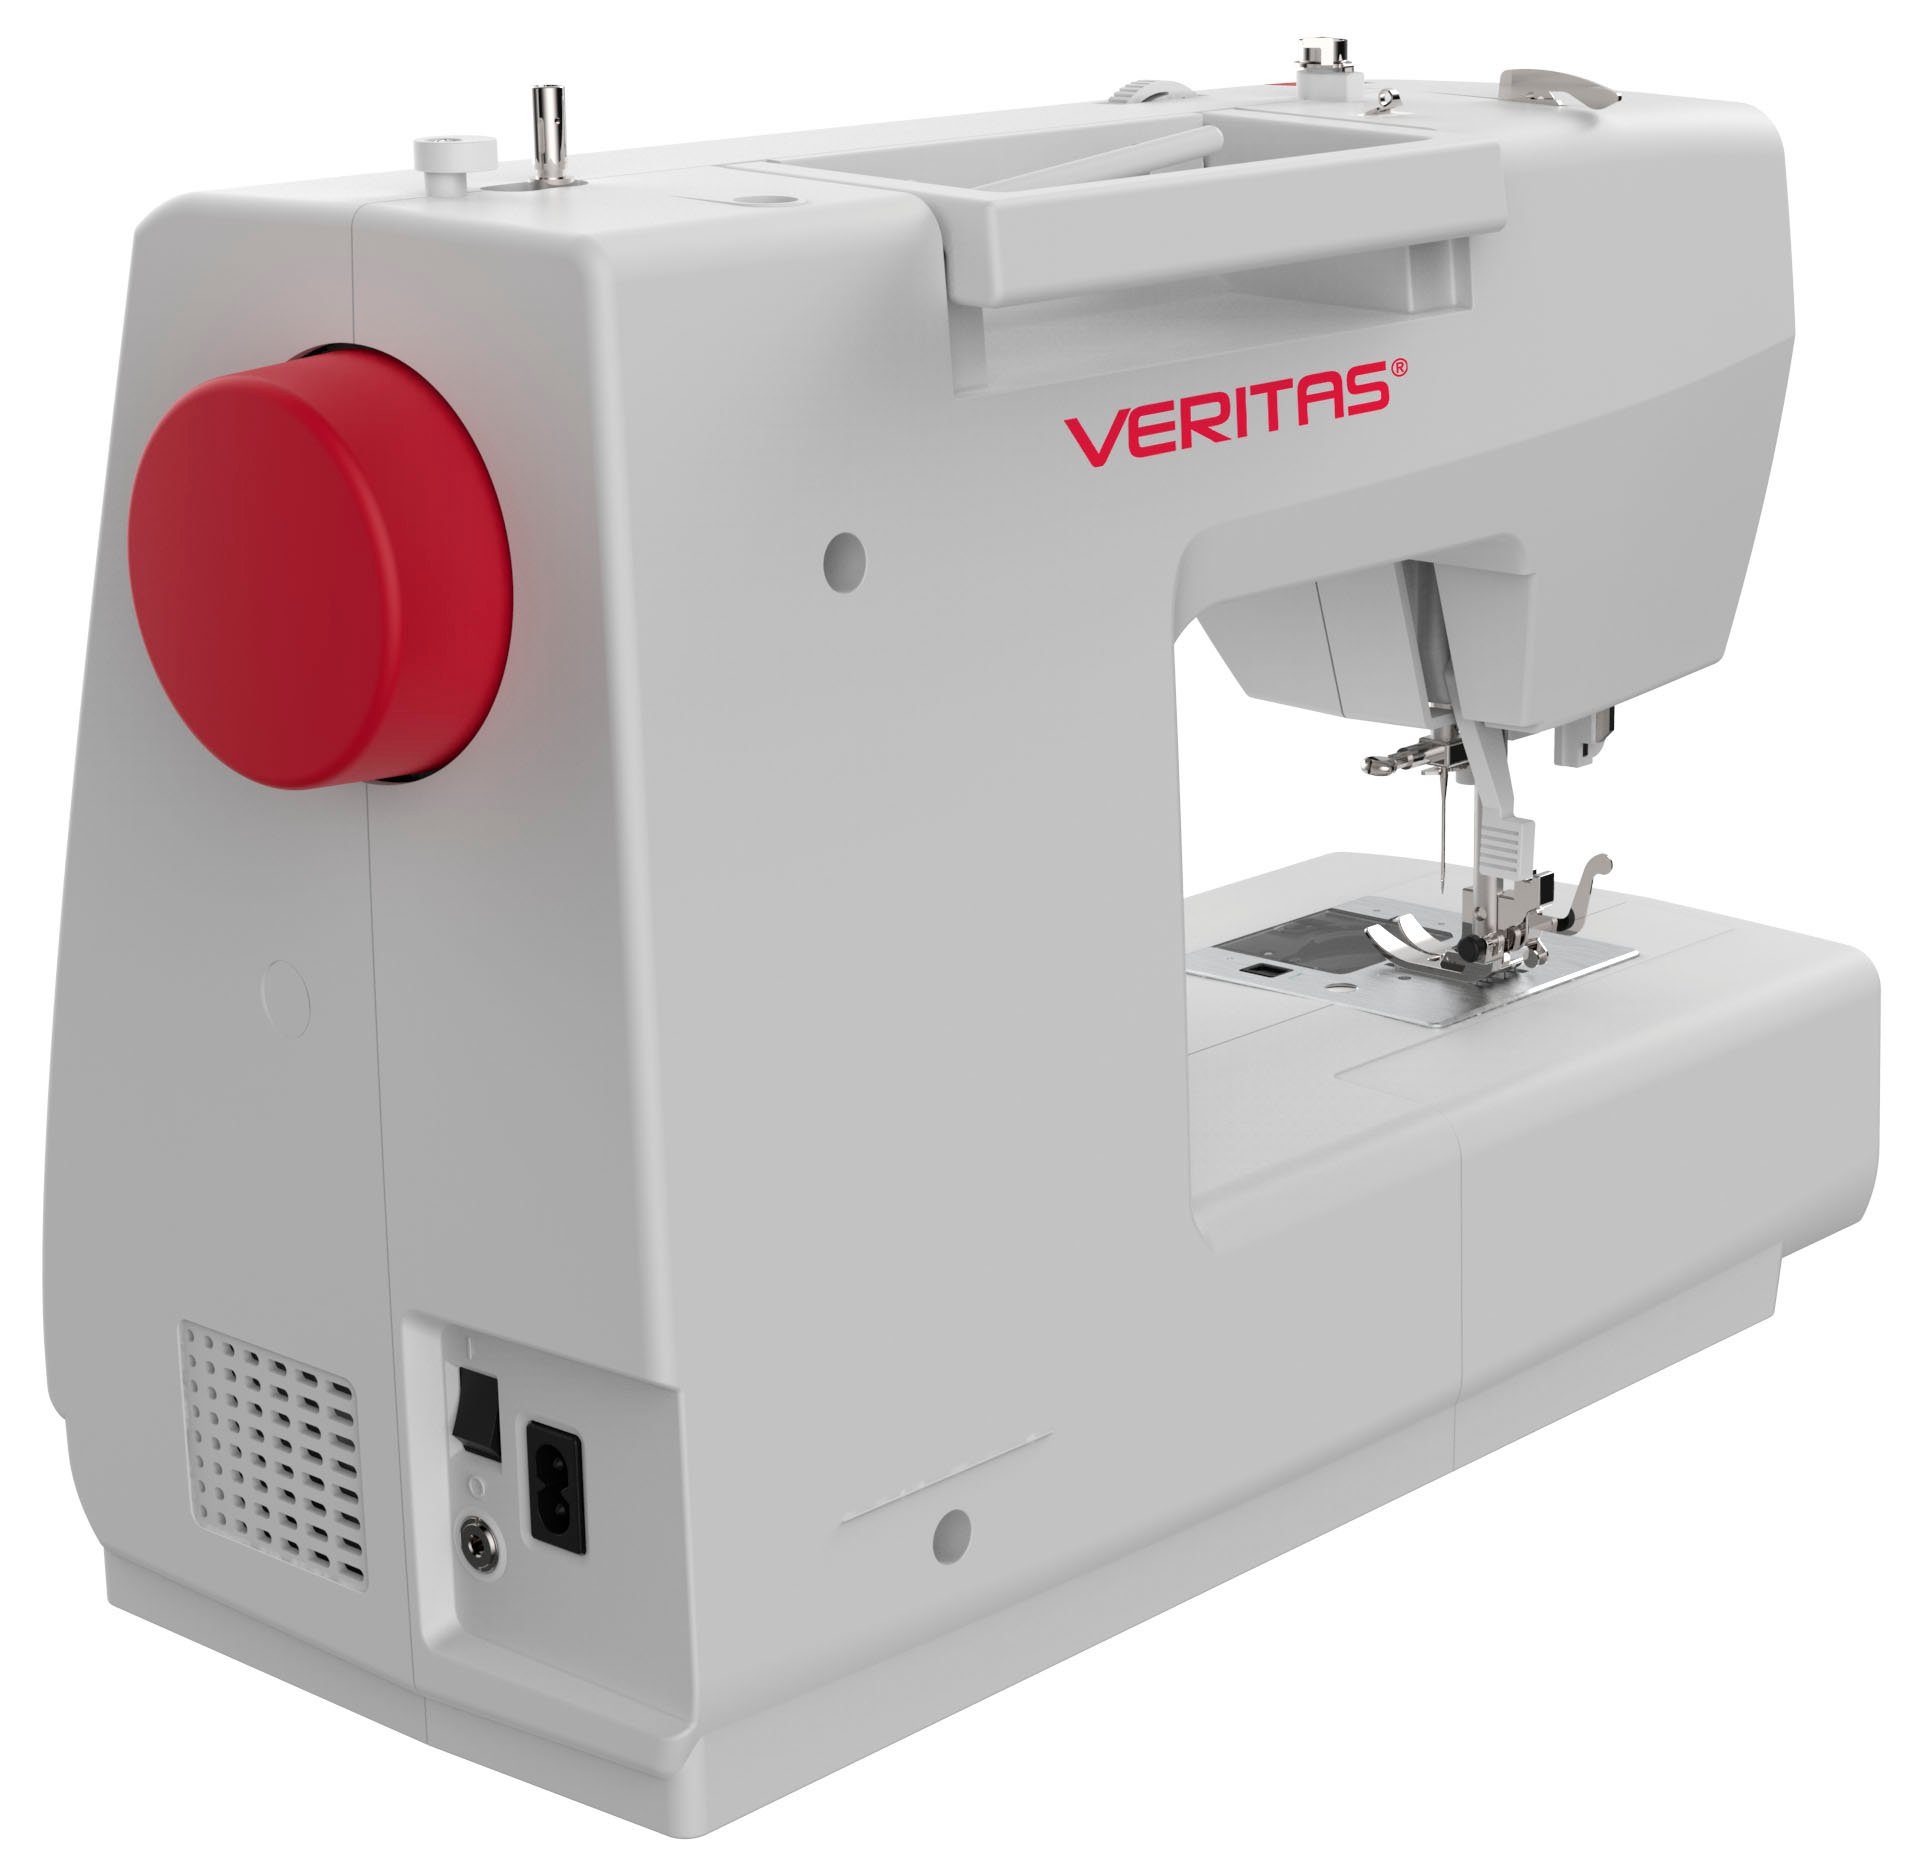 Veritas Computer-Nähmaschine Veritas Claire, 197 für Programme, Modernste Technologie Näharbeiten